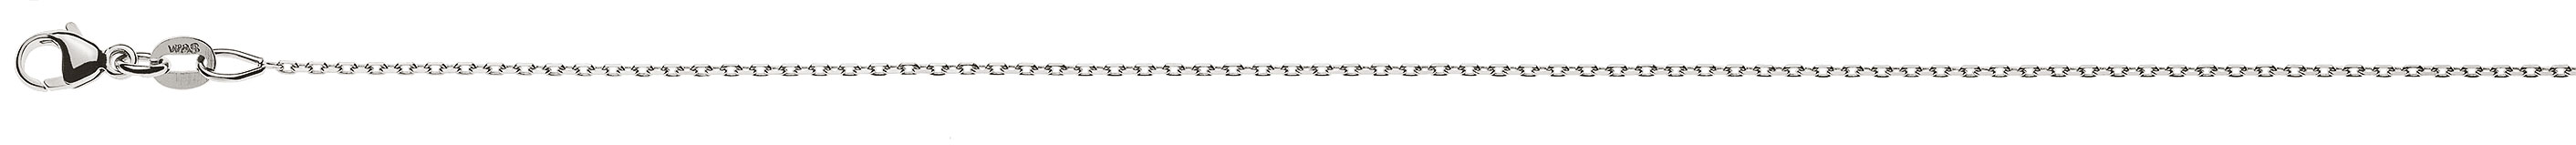 AURONOS Prestige Halskette Weissgold 18K Anker 4-fach geschliffen 42cm 0.9mm